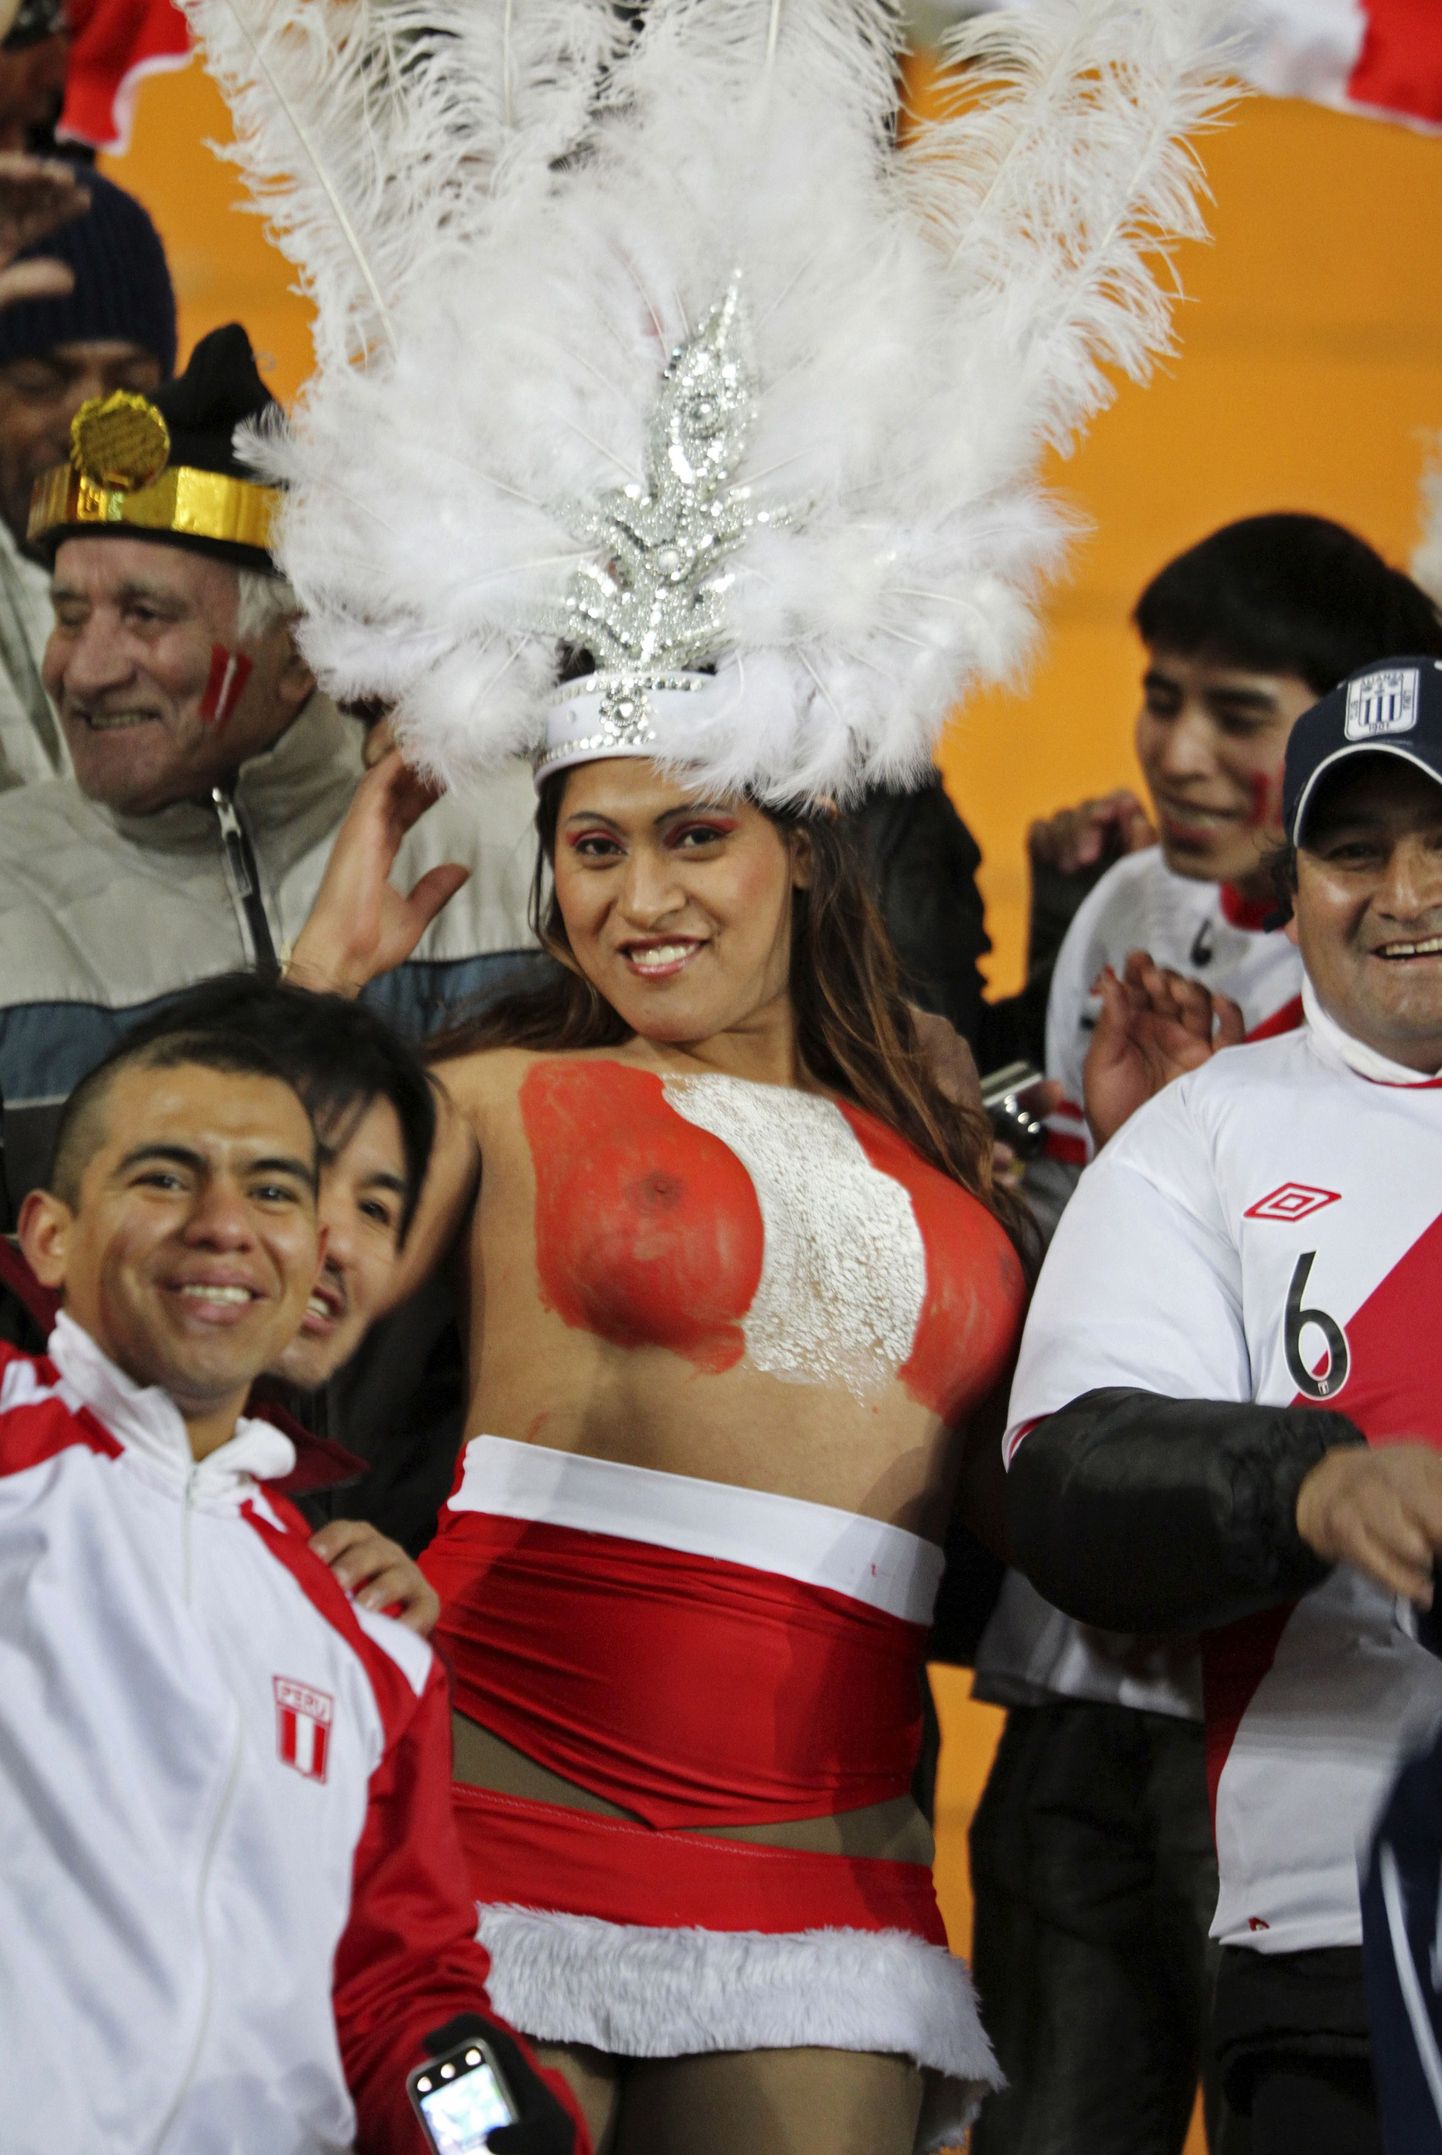 Peruu jalgpallikoondise poolehoidja.